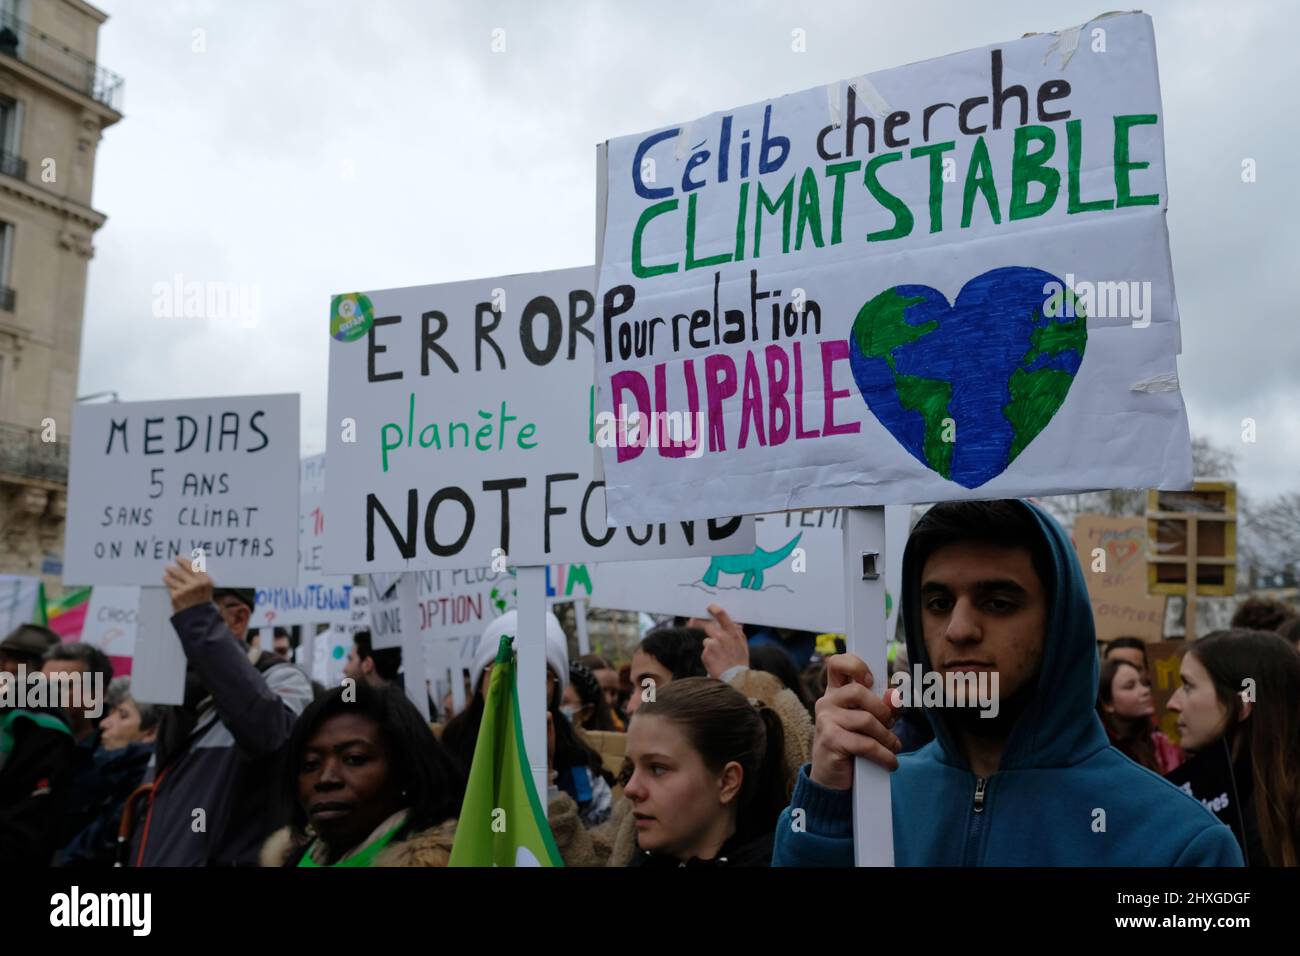 Der Marsch für das Klima in Paris versammelte etwa 8000 Menschen zwischen "Nation" und "Öffentlichkeit". Der Slogan stellte die Ökologie in den Mittelpunkt des Präsidenten Stockfoto